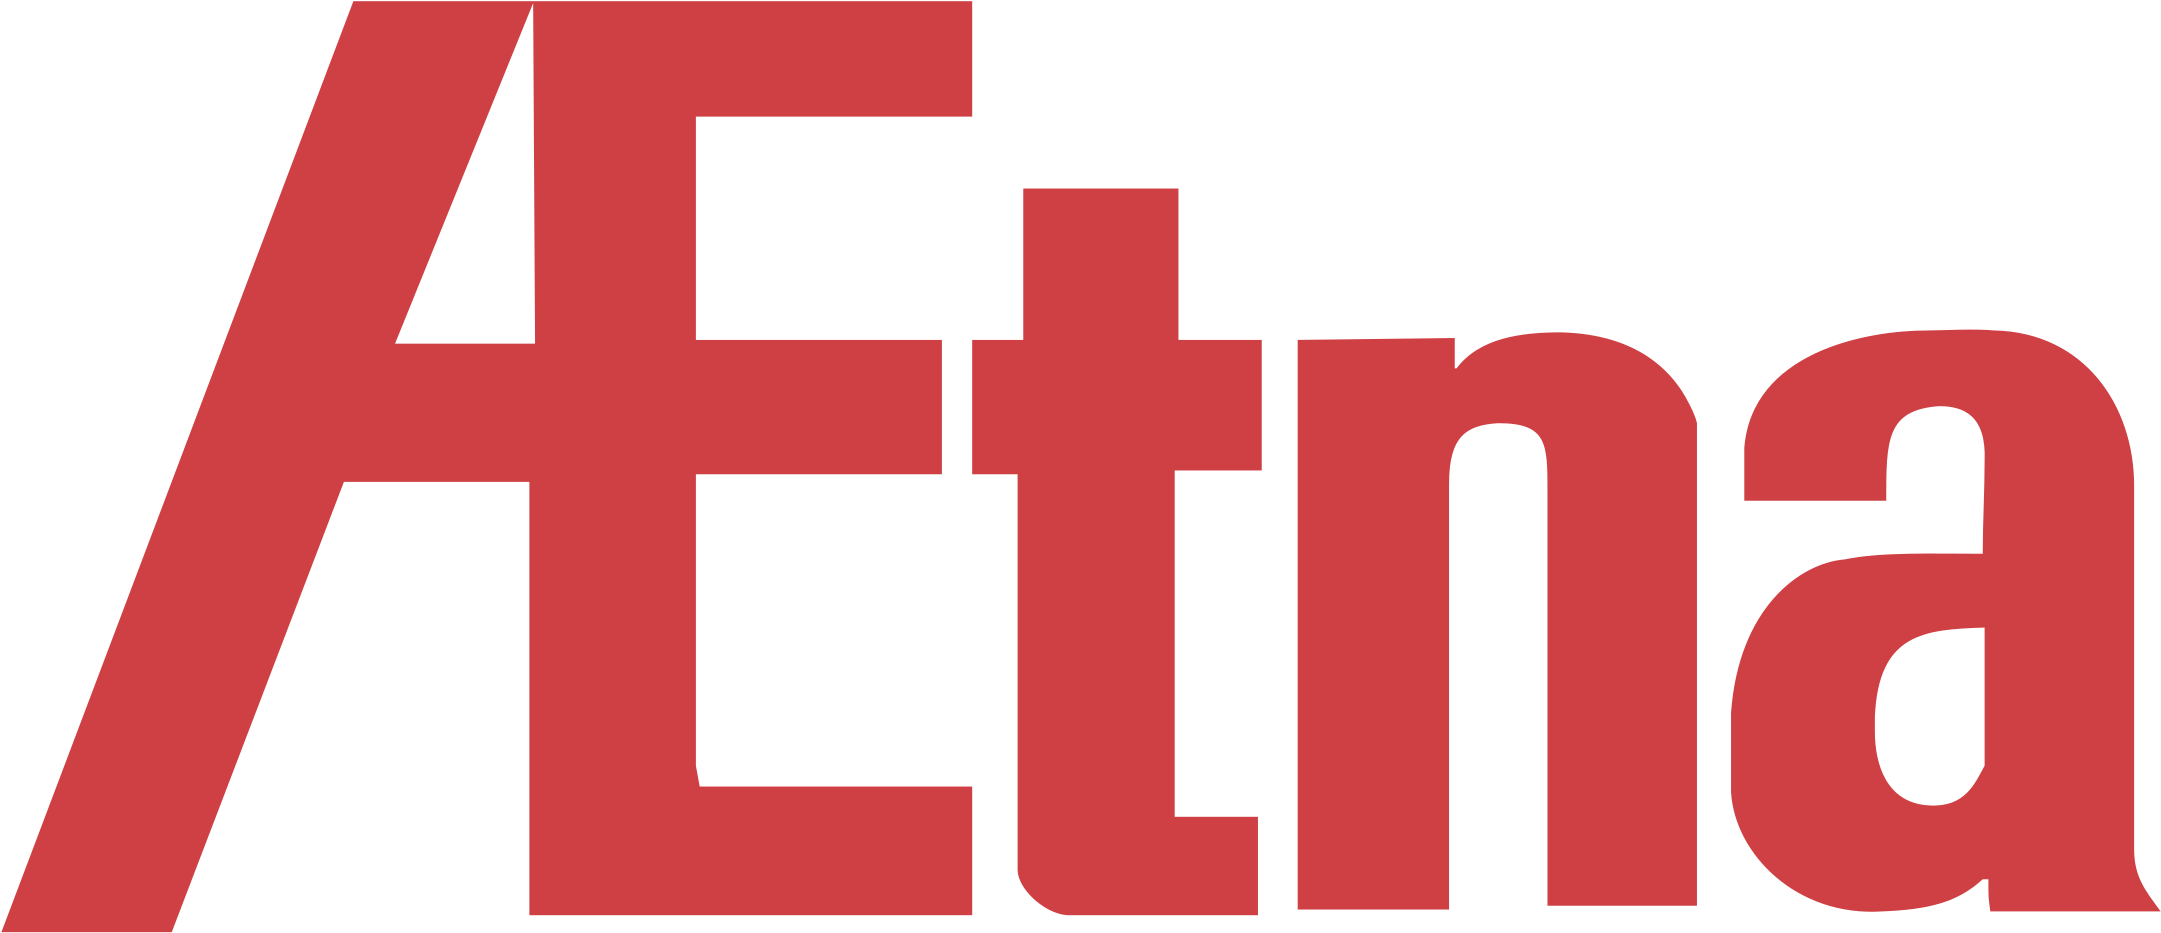 Aetna Logo Png Transparent - Aetna Clipart (2161x933), Png Download